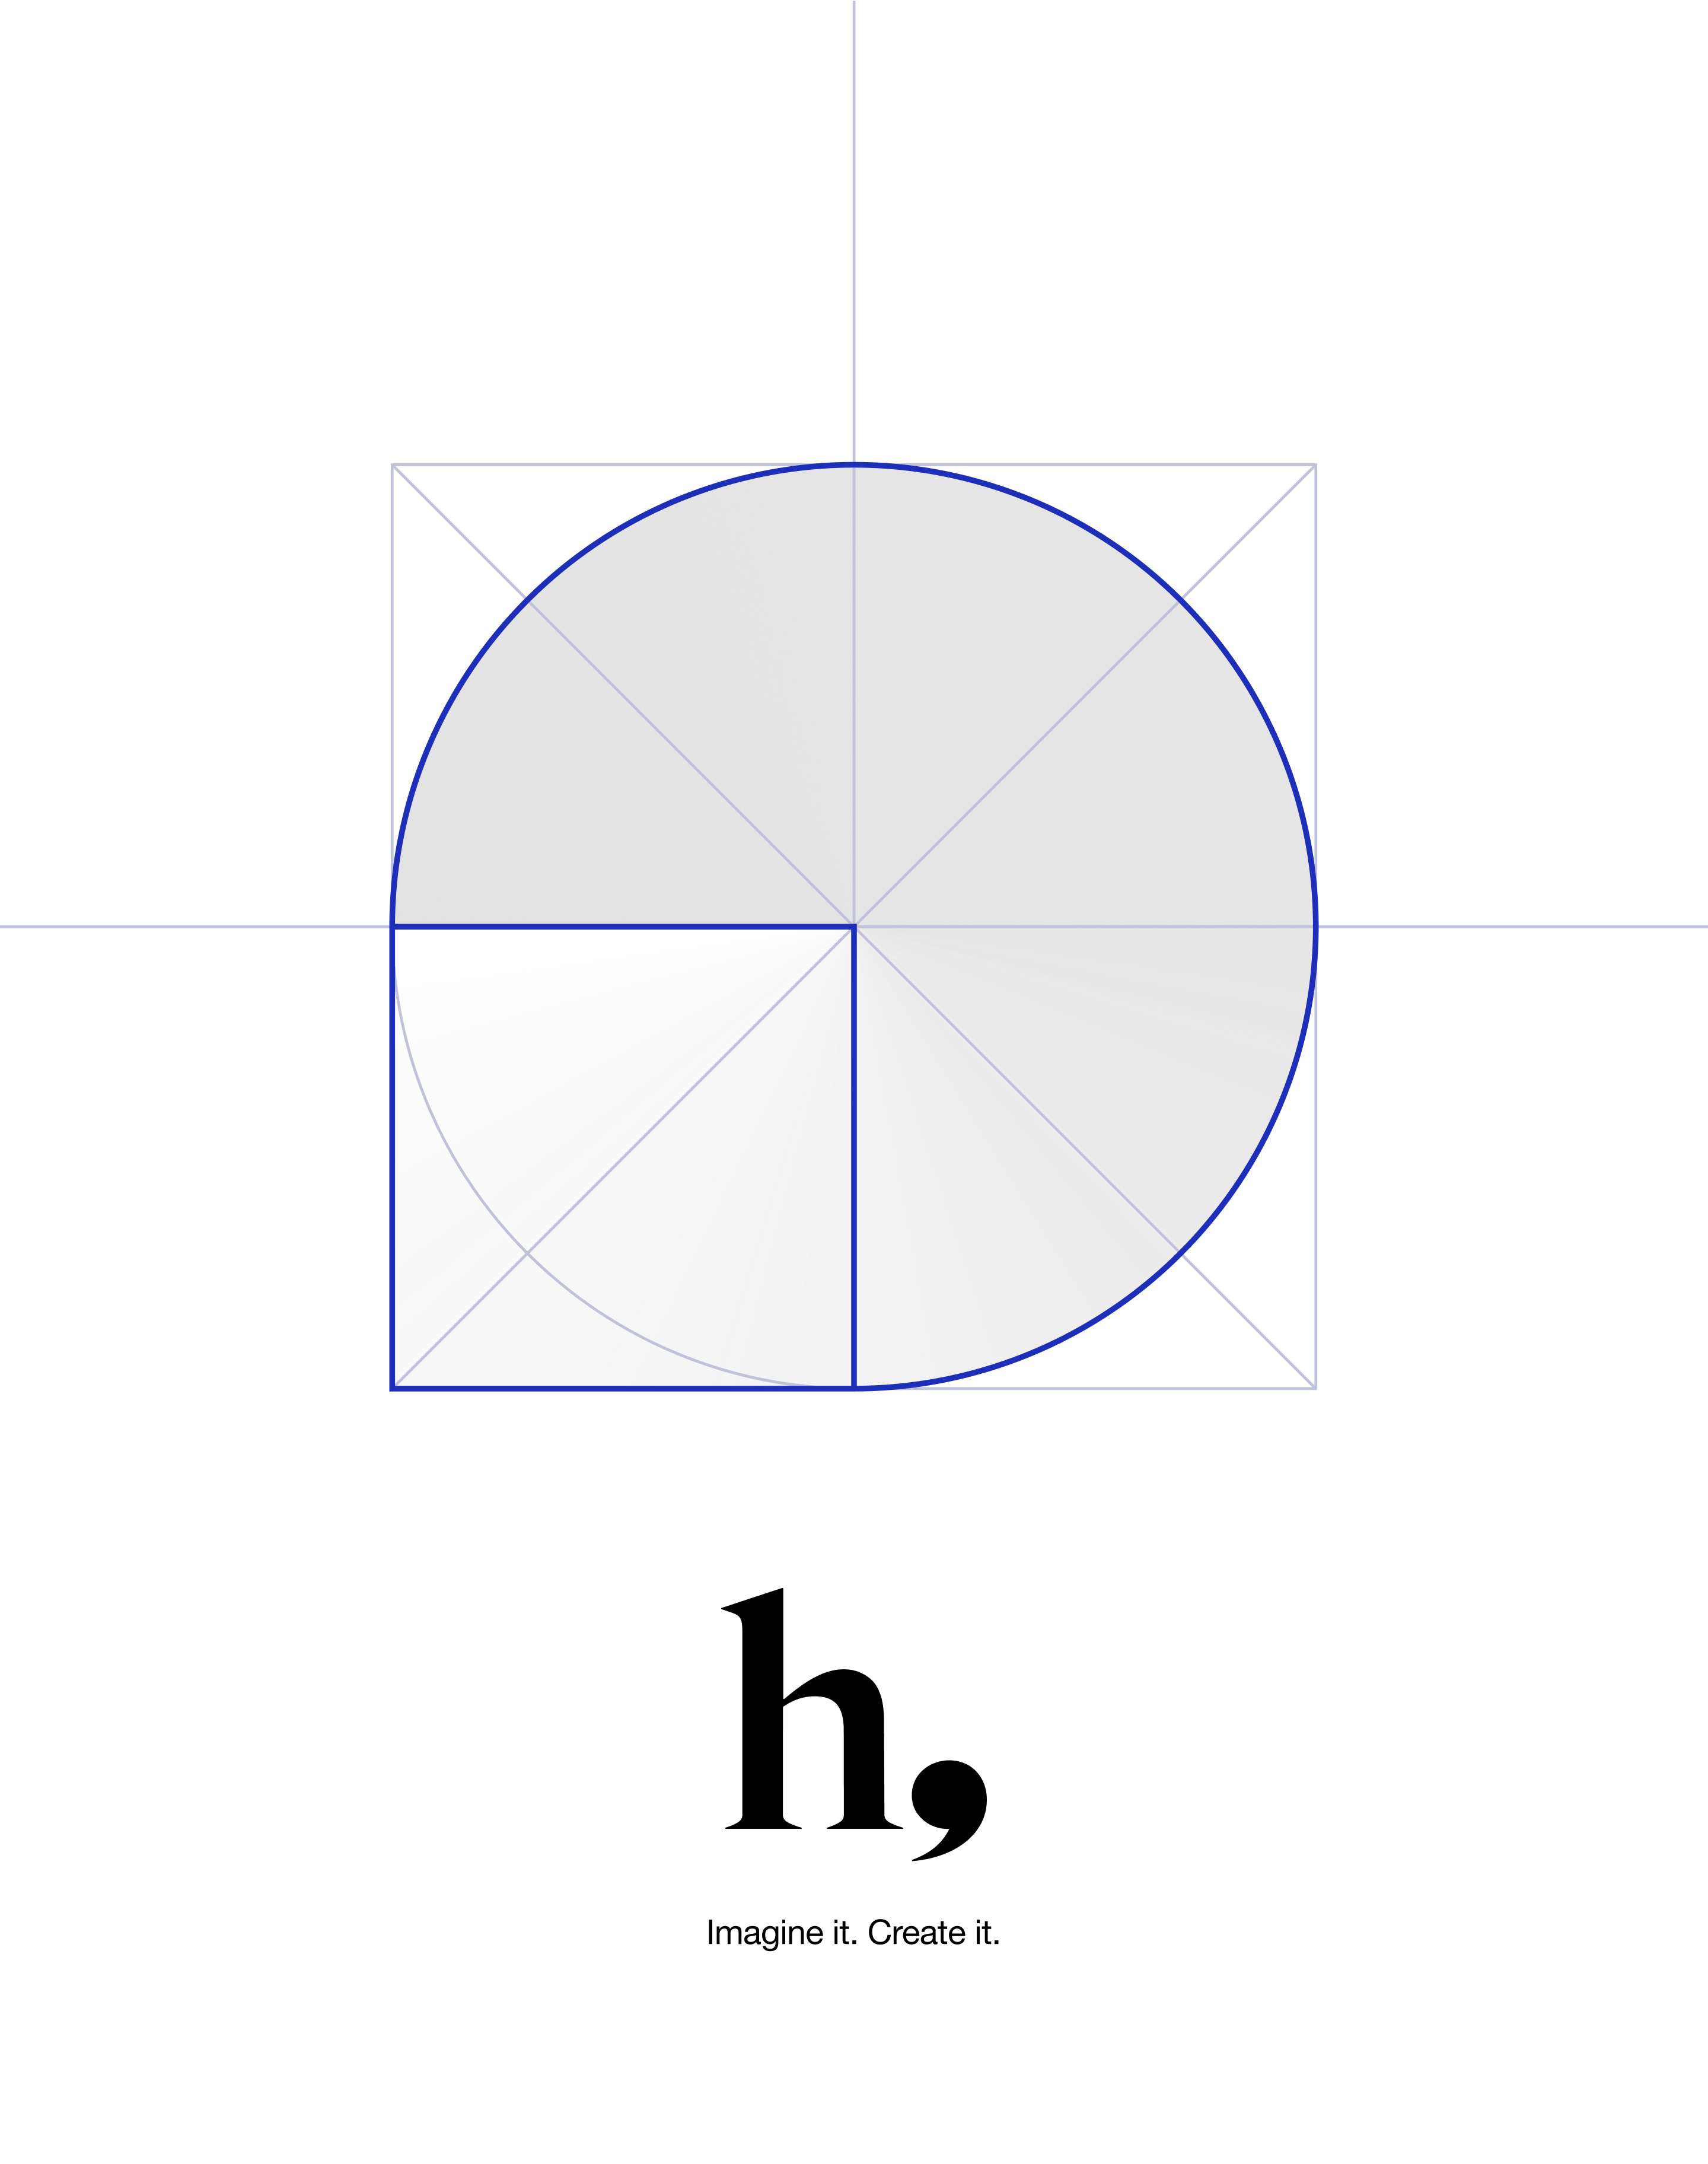 hnine's logo with